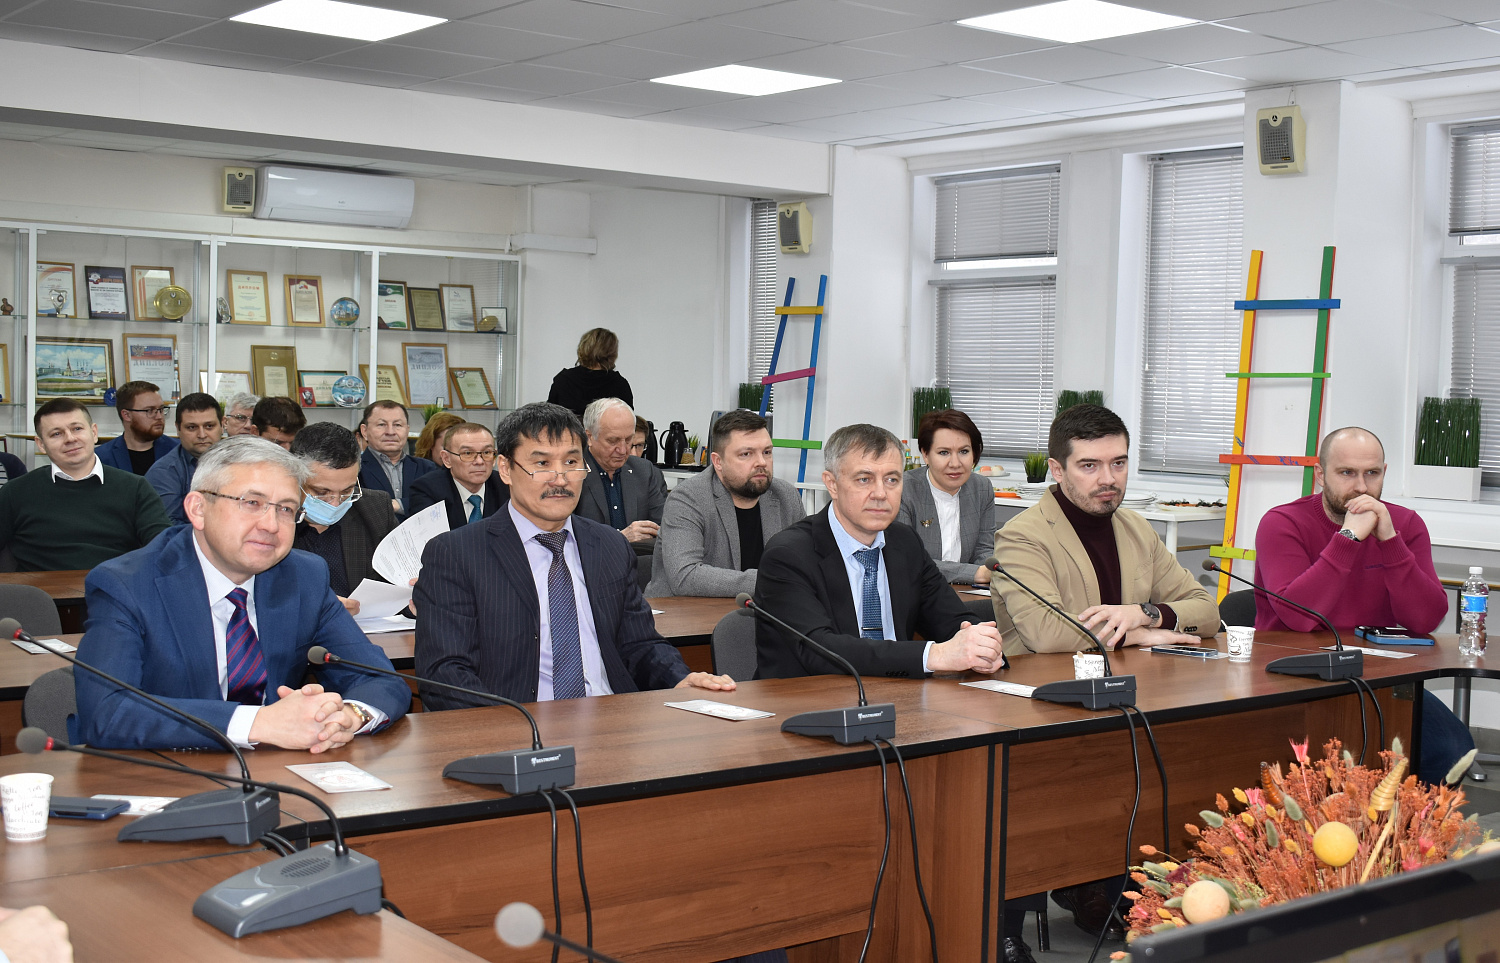 10 февраля 2022 г. в ТПП Чувашской Республики состоялось расширенное заседание Совета и Правления Торгово-промышленной палаты Чувашской Республики